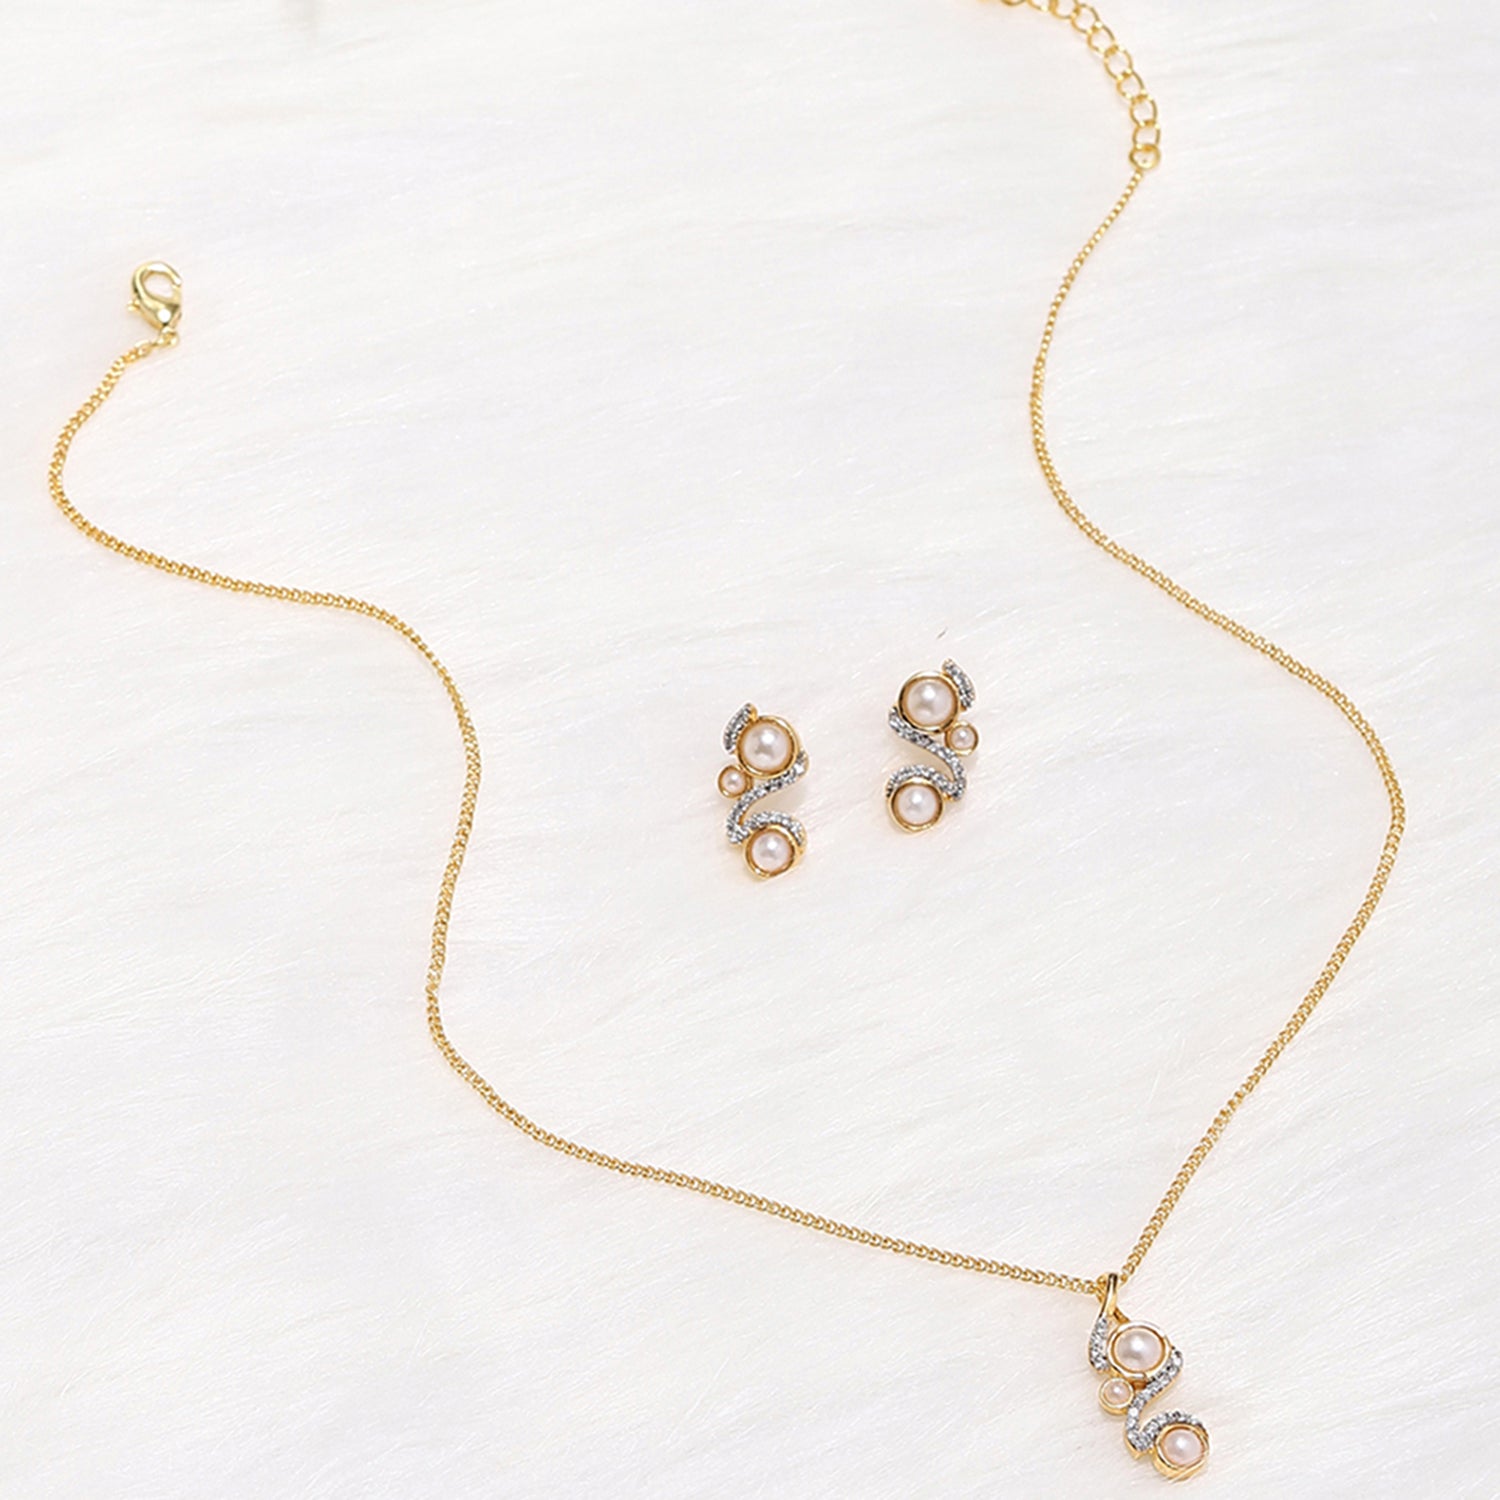 22K Gold Necklace & Drop Earrings set - 235-GS846 in 18.650 Grams